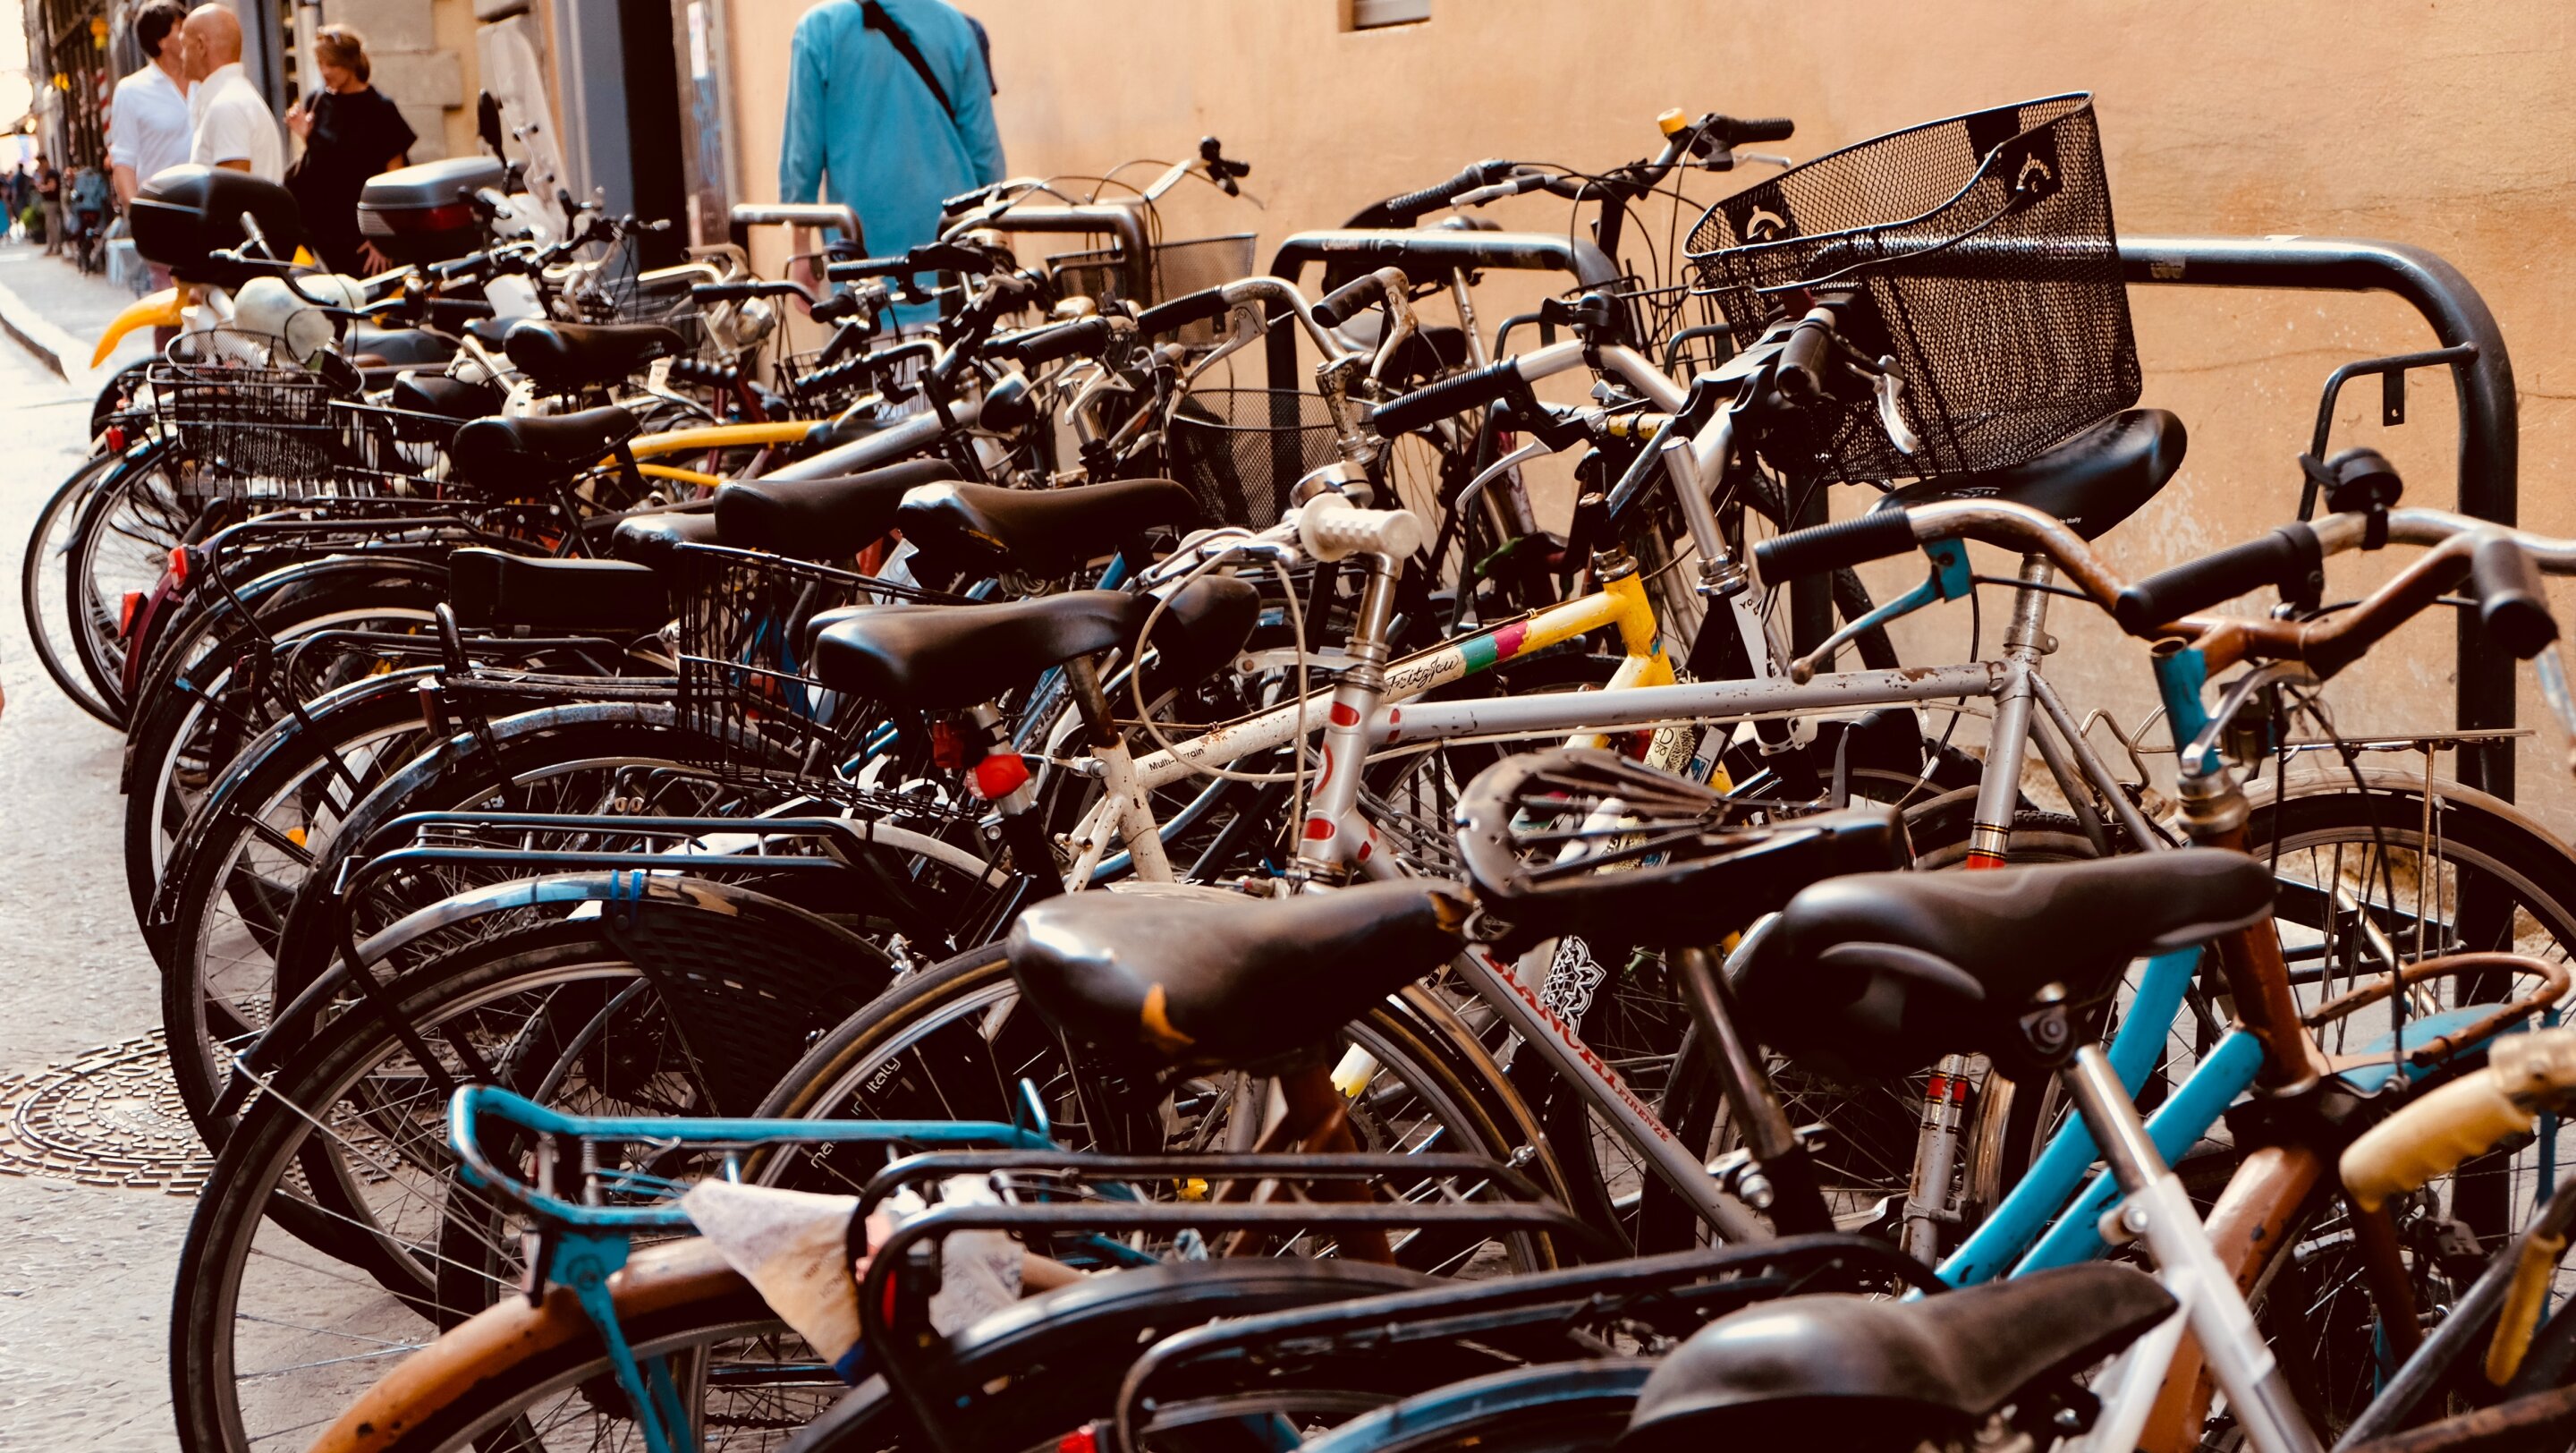 Where do stolen bikes go?